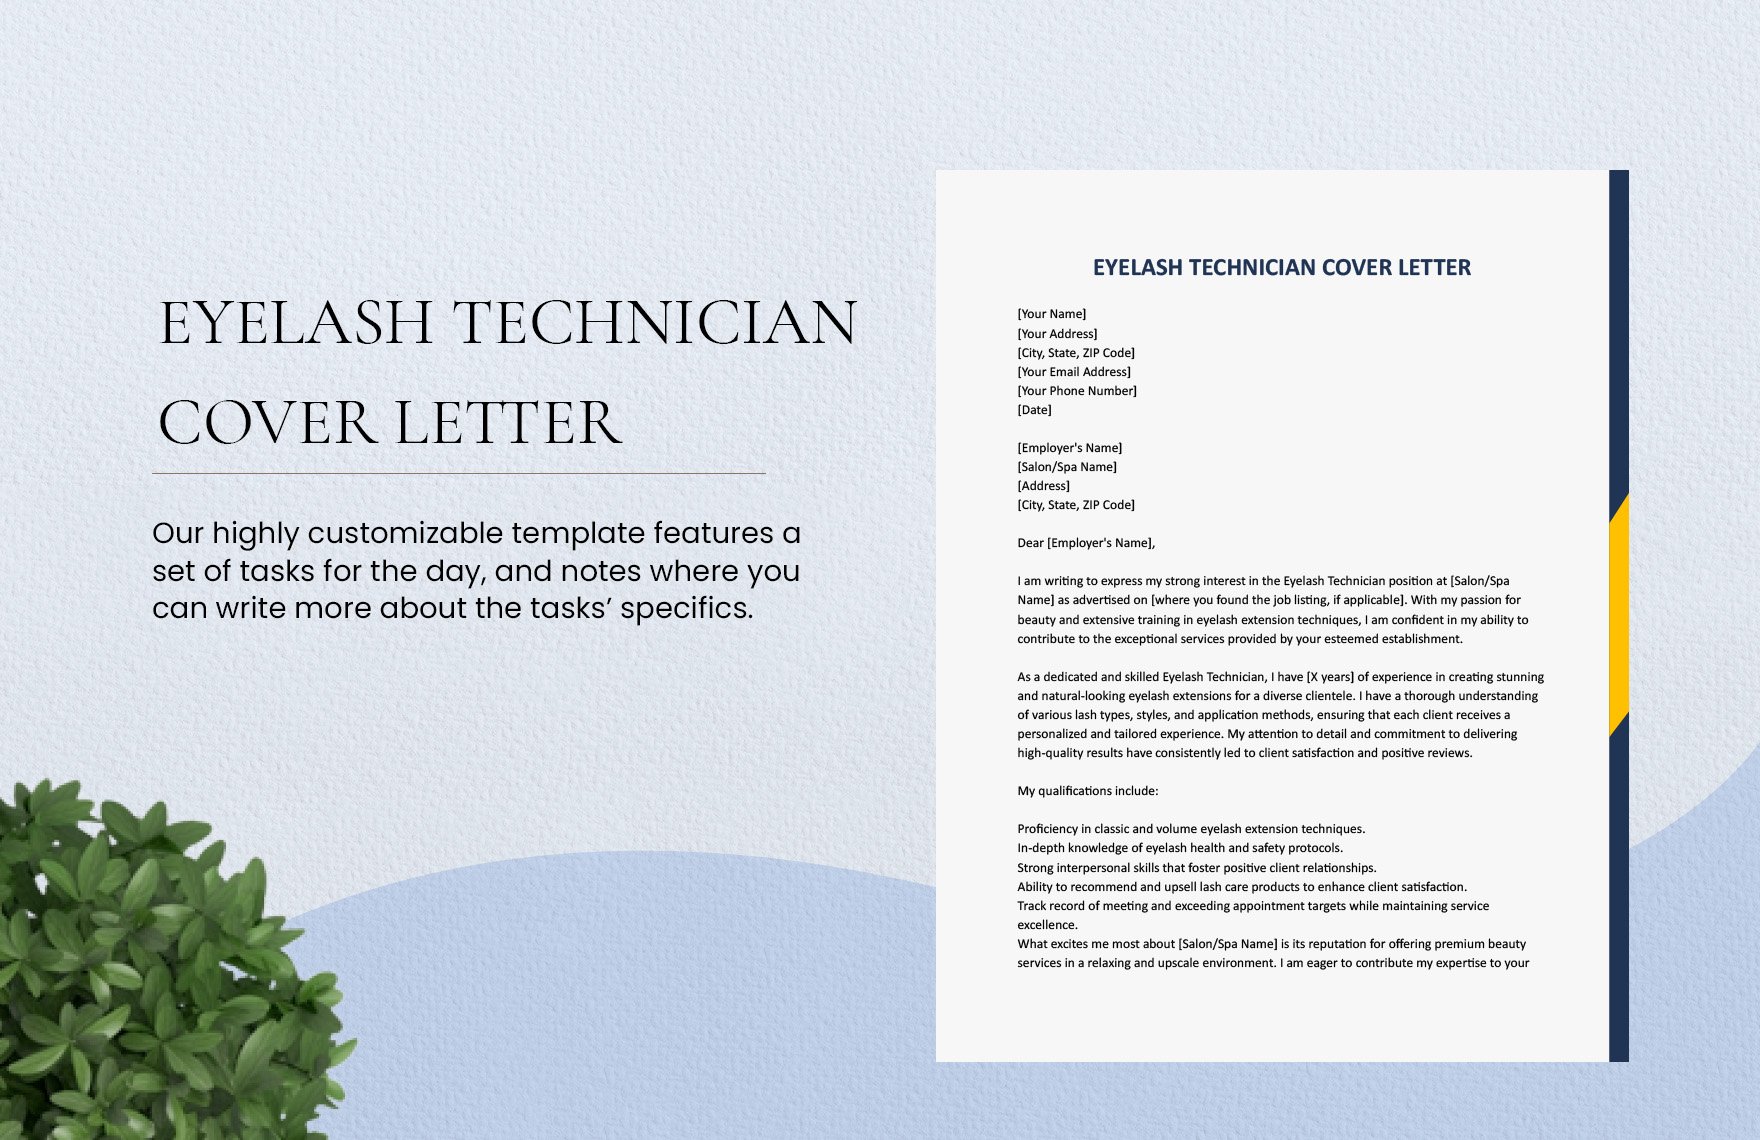 Eyelash Technician Cover Letter